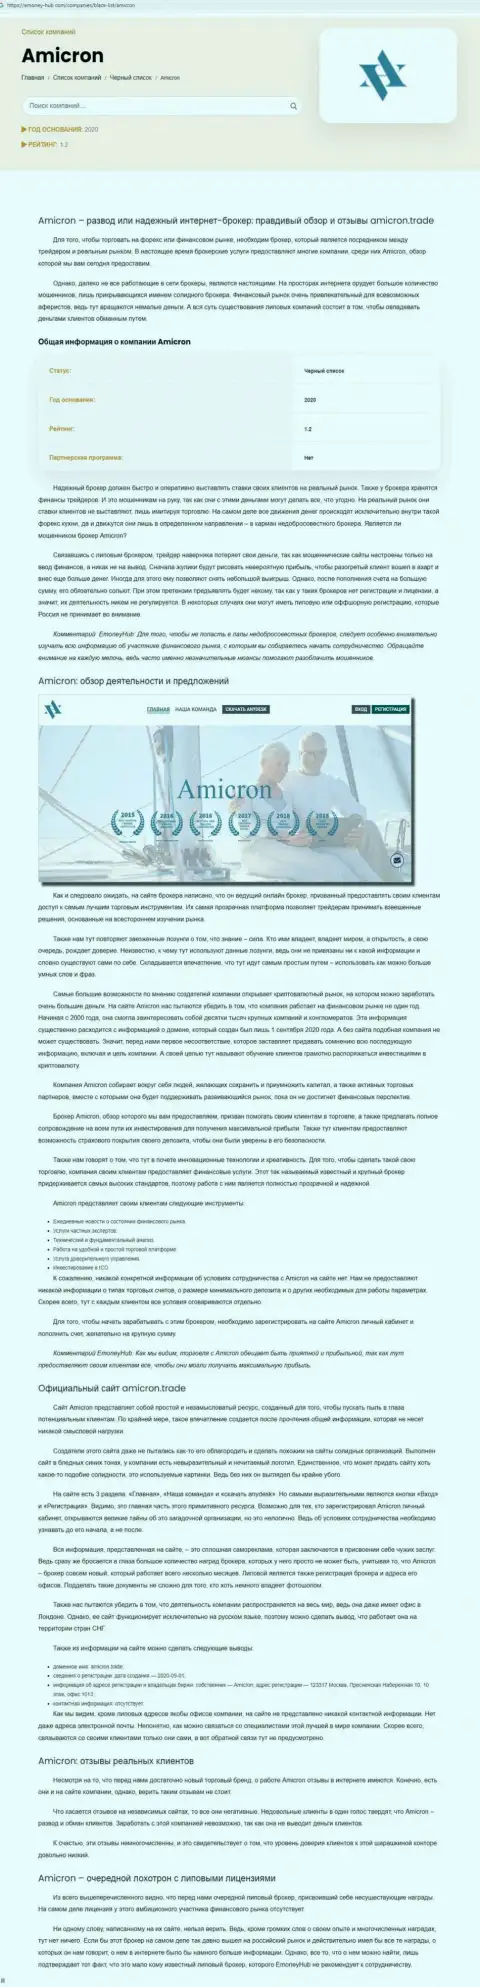 Amicron Trade - это нахальный обман своих клиентов (обзорная статья махинаций)